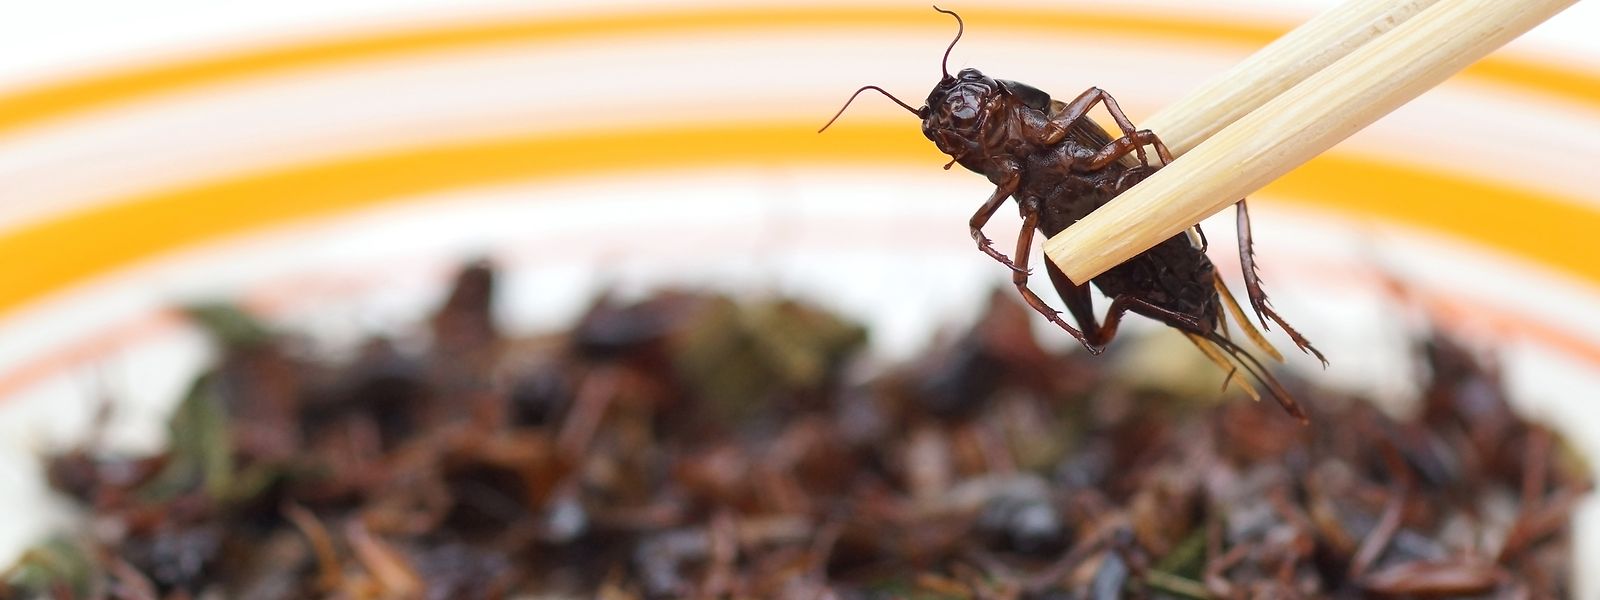 Immer mehr Insekten werden von der EU als Nahrungsmittel zugelassen, stellt der Autor fest.